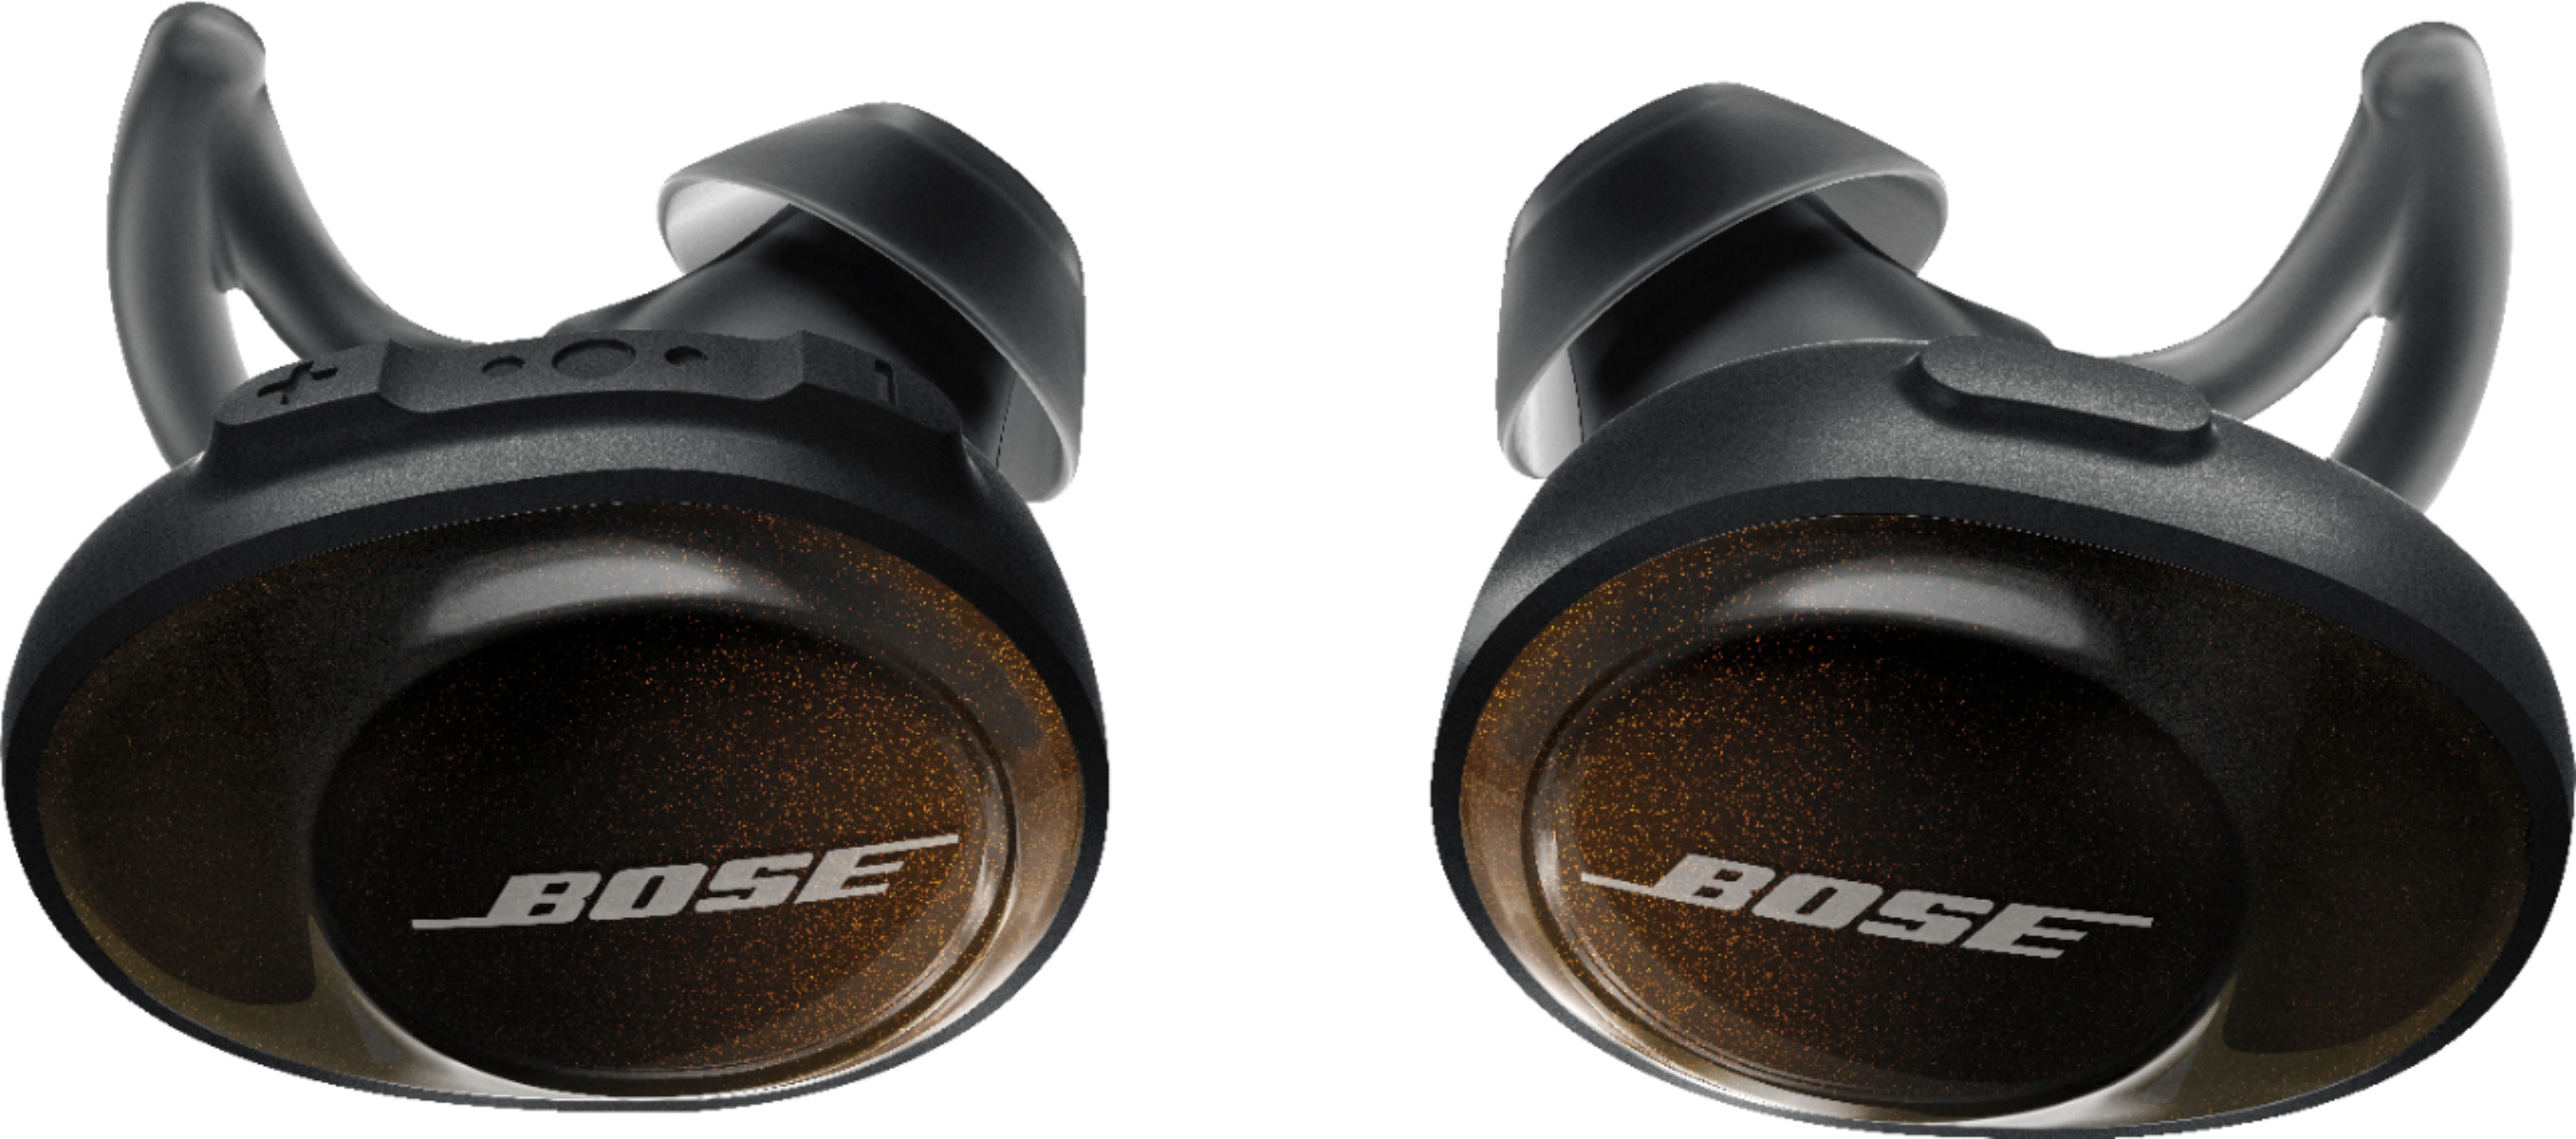 Bose SoundSport Free True Wireless Earbuds Black - Best Buy